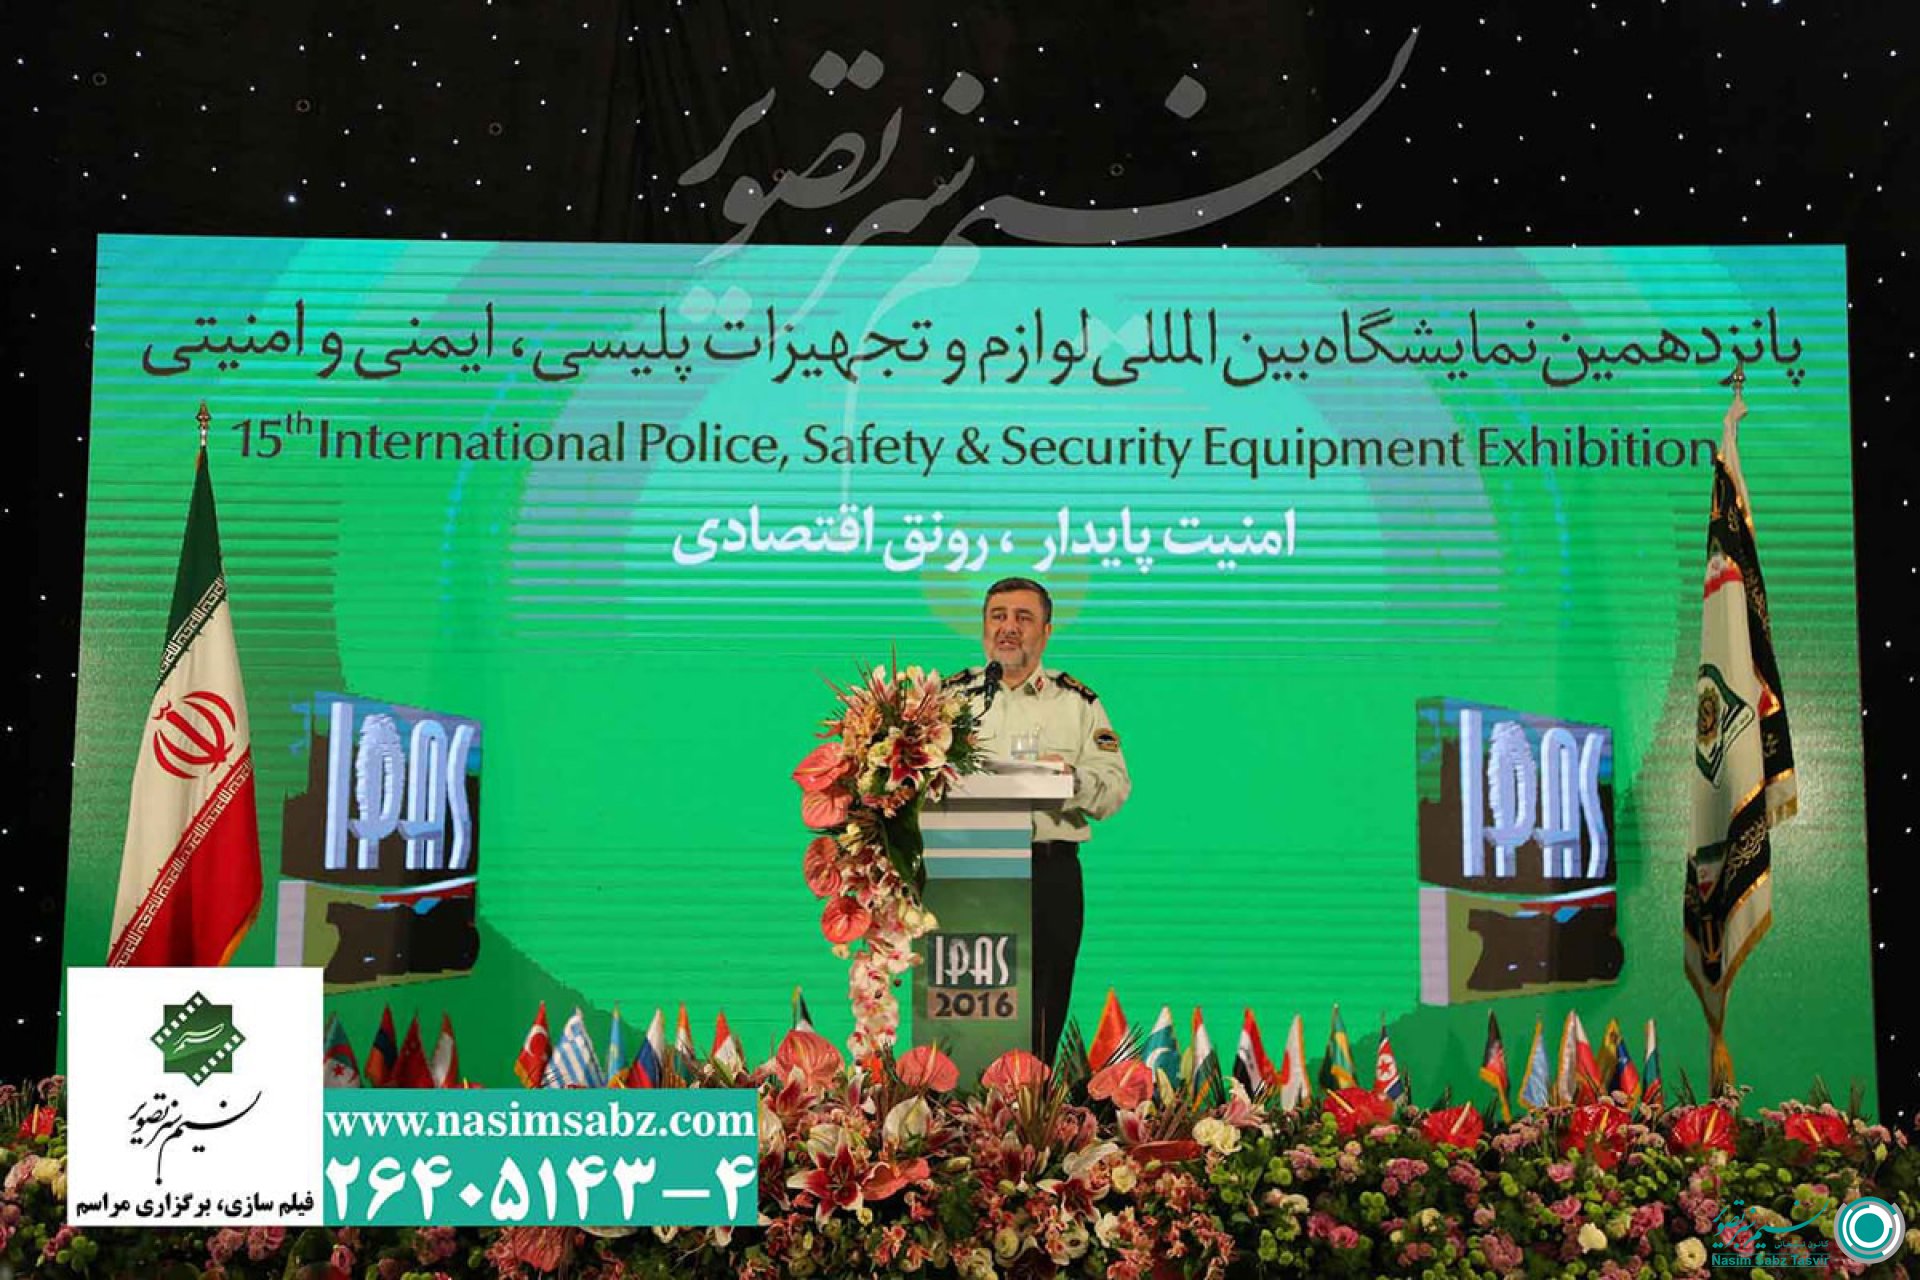 برگزاری افتتاحیه پانزدهمین نمایشگاه بین المللی تجهیزات پلیس، ایمنی و امنیتی